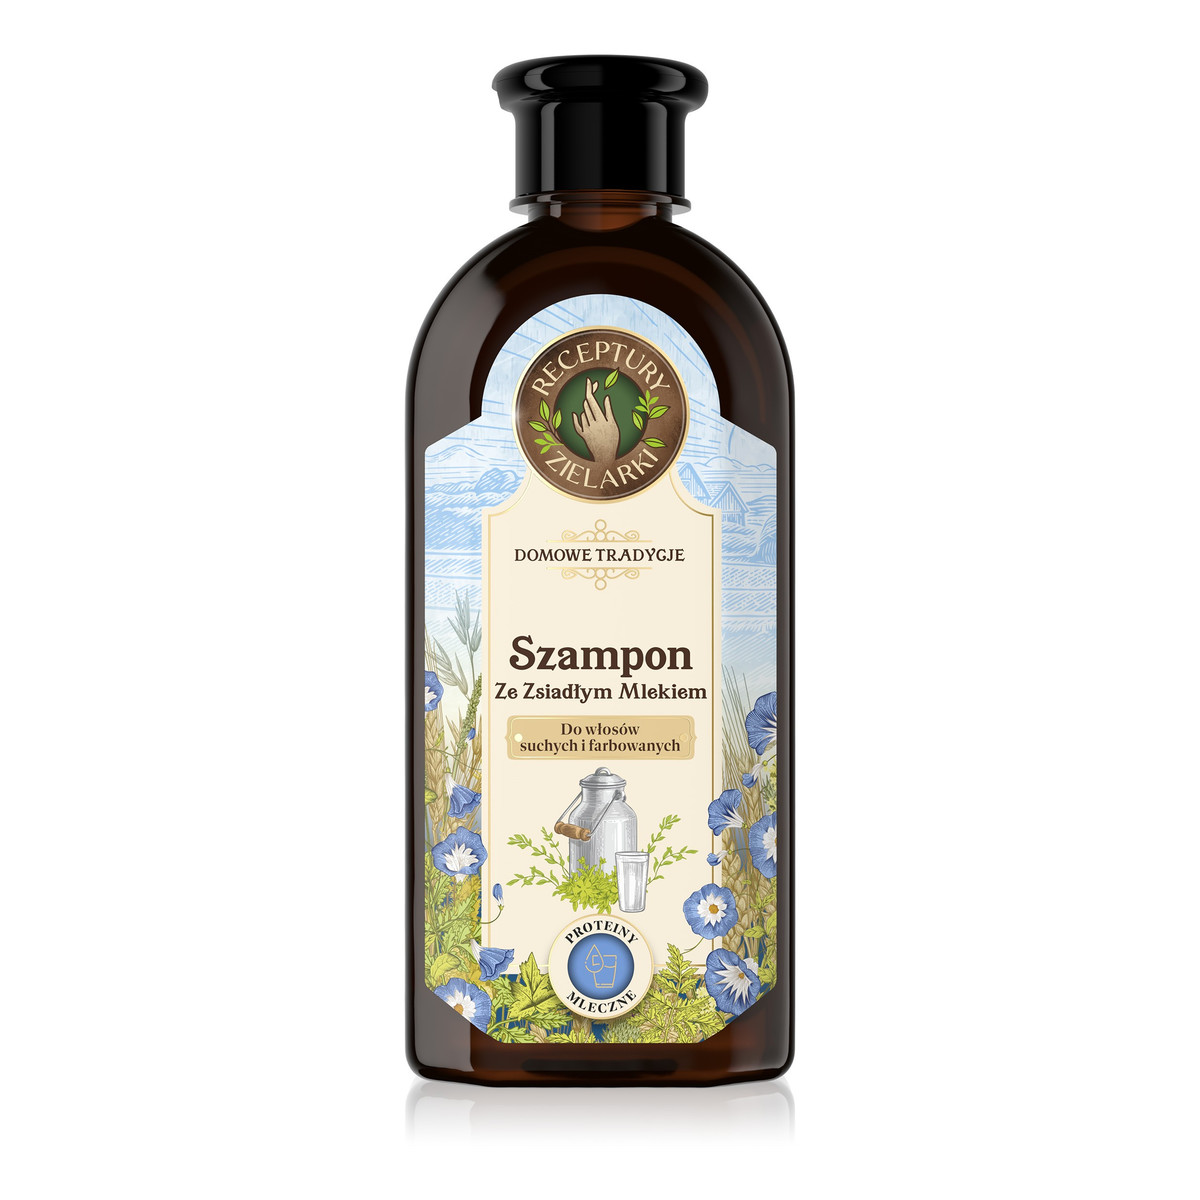 Receptury Zielarki Domowe Tradycje szampon ze zsiadłym mlekiem do włosów suchych i farbowanych 350ml